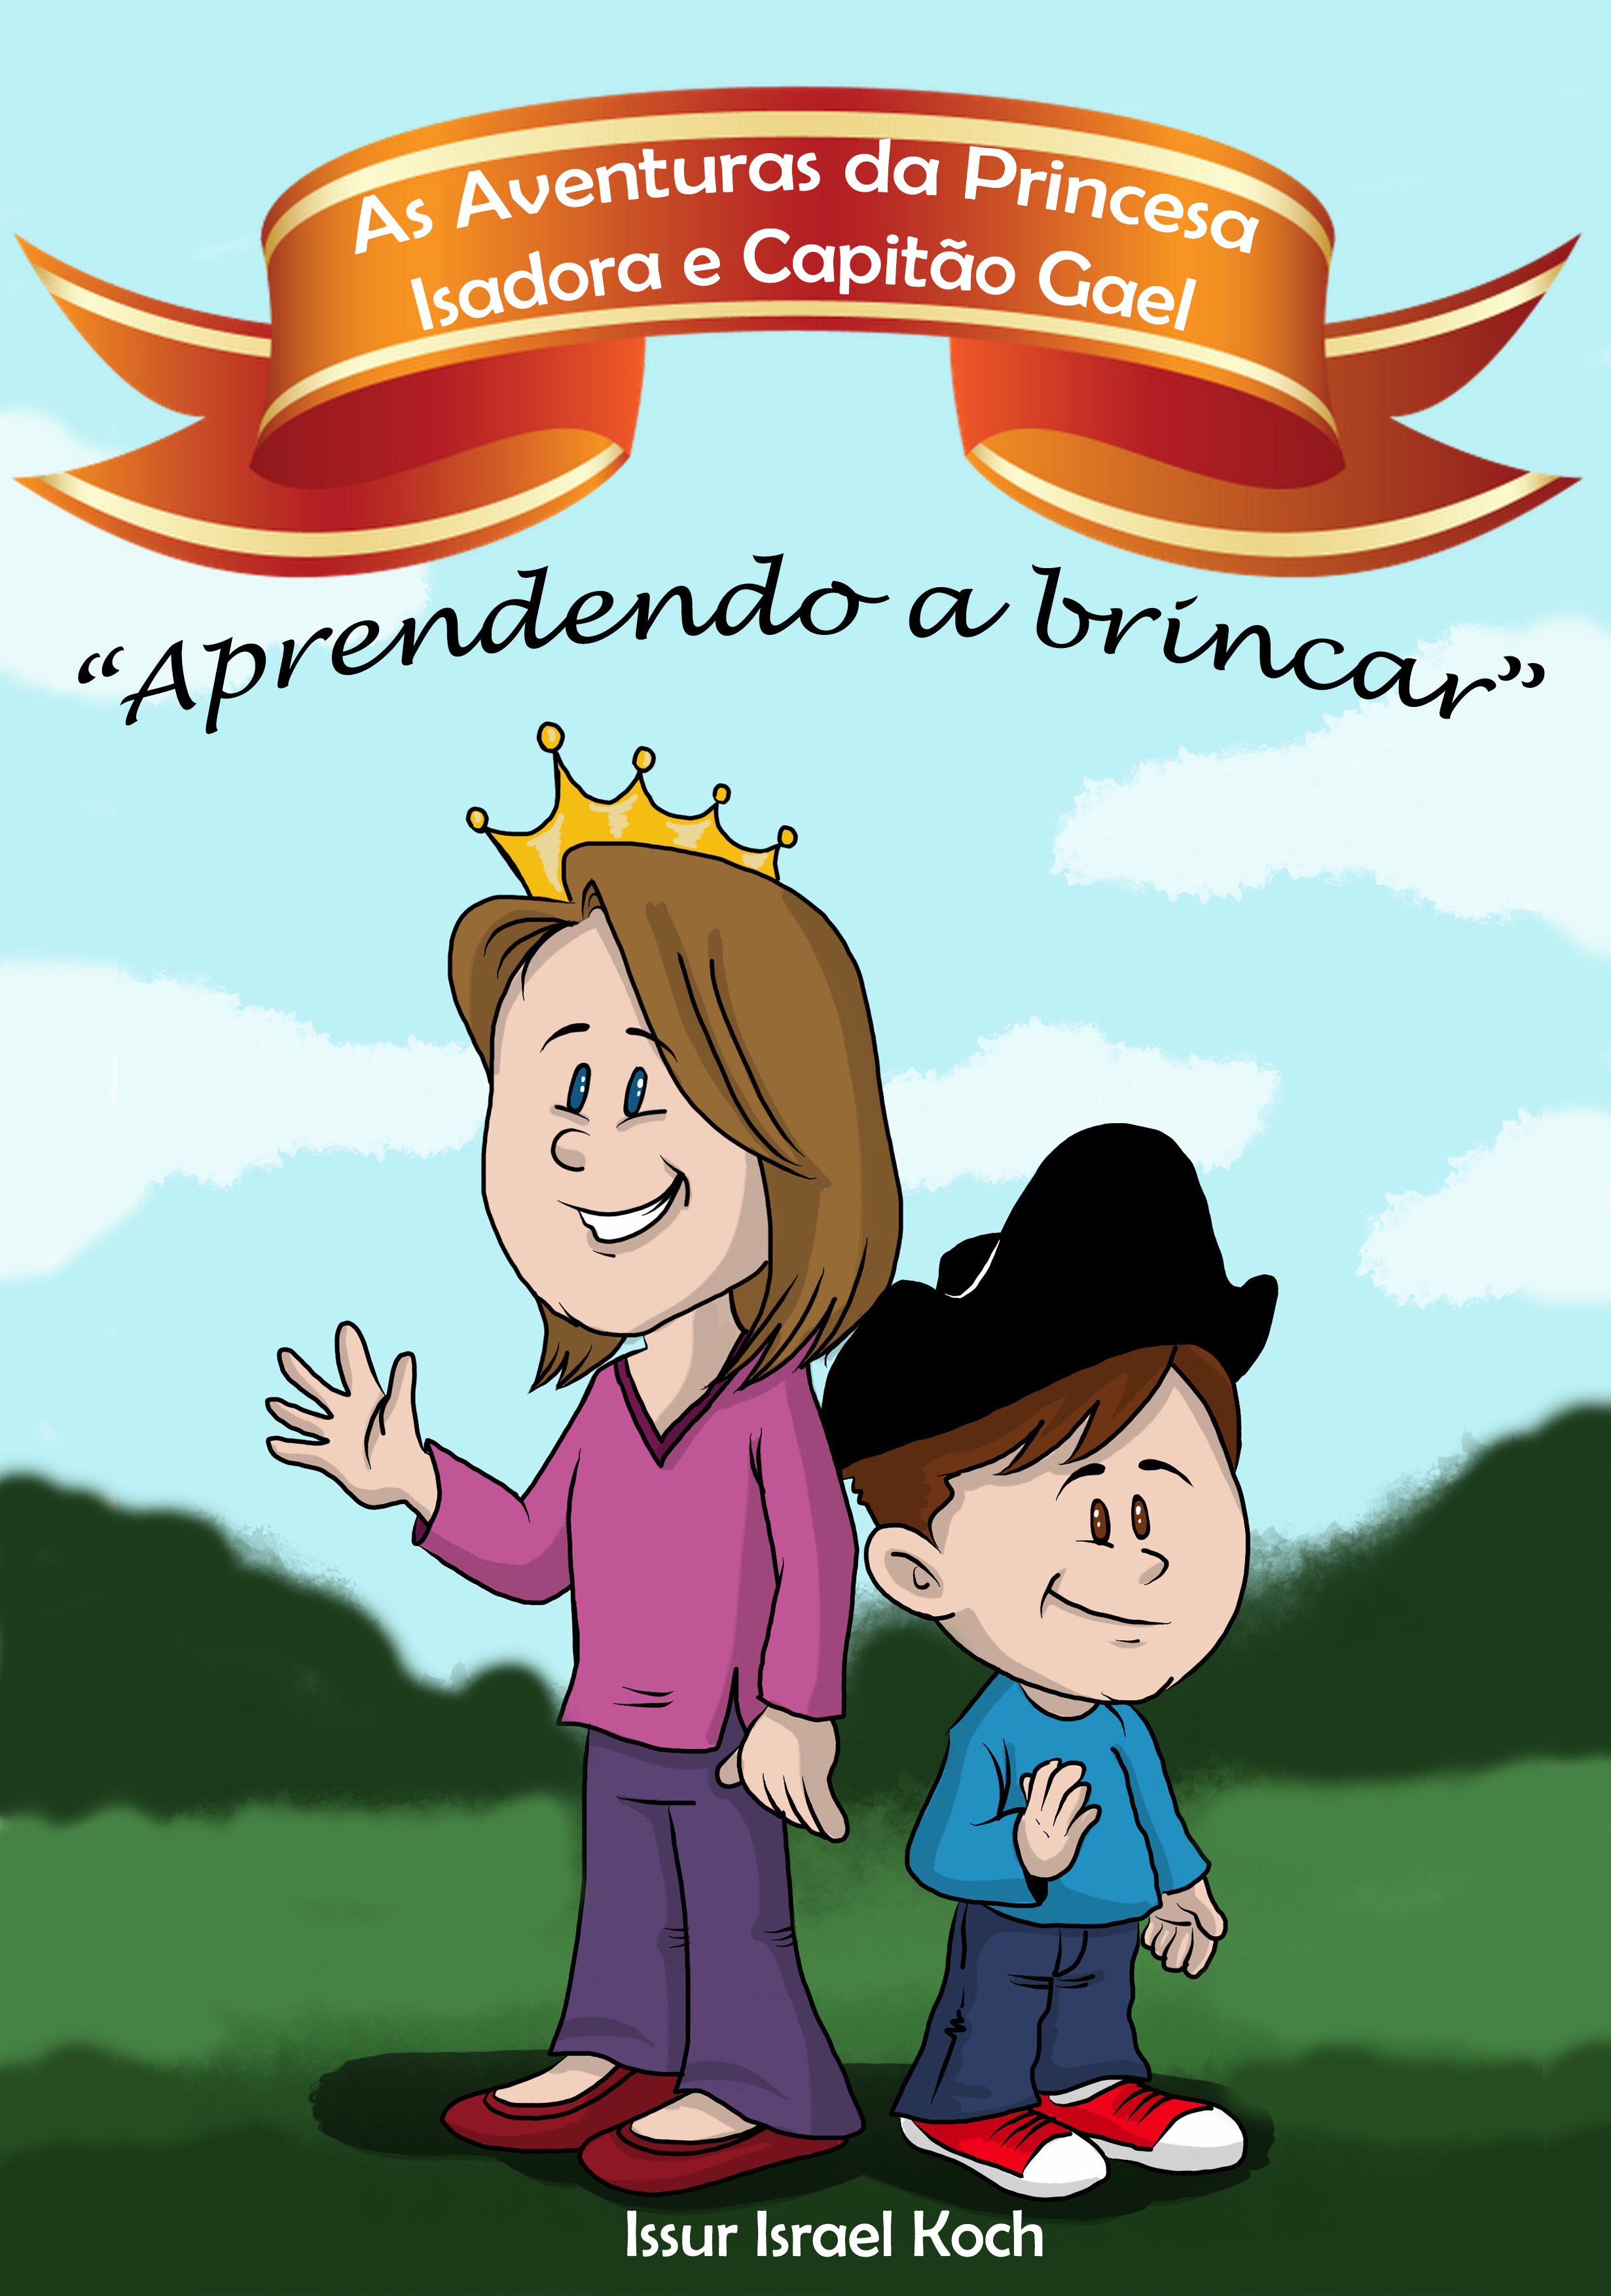 16/08/2018 - Issur Koch lança livro infantil “As Aventuras de Princesa Isadora e Capitão Gael em: Aprendendo a brincar”